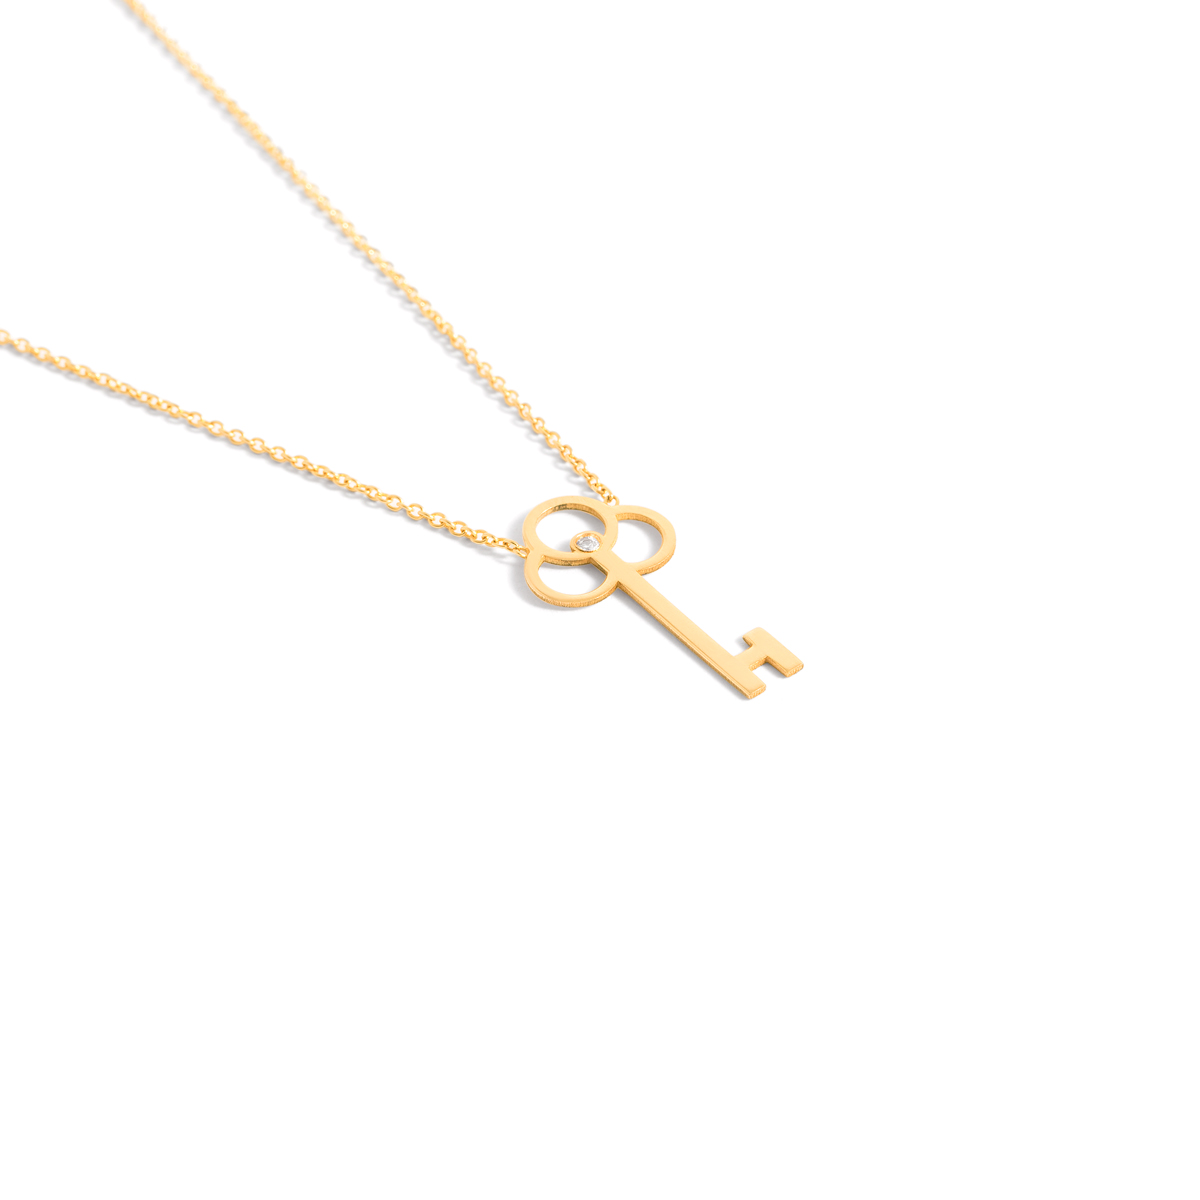 Key gold necklace g